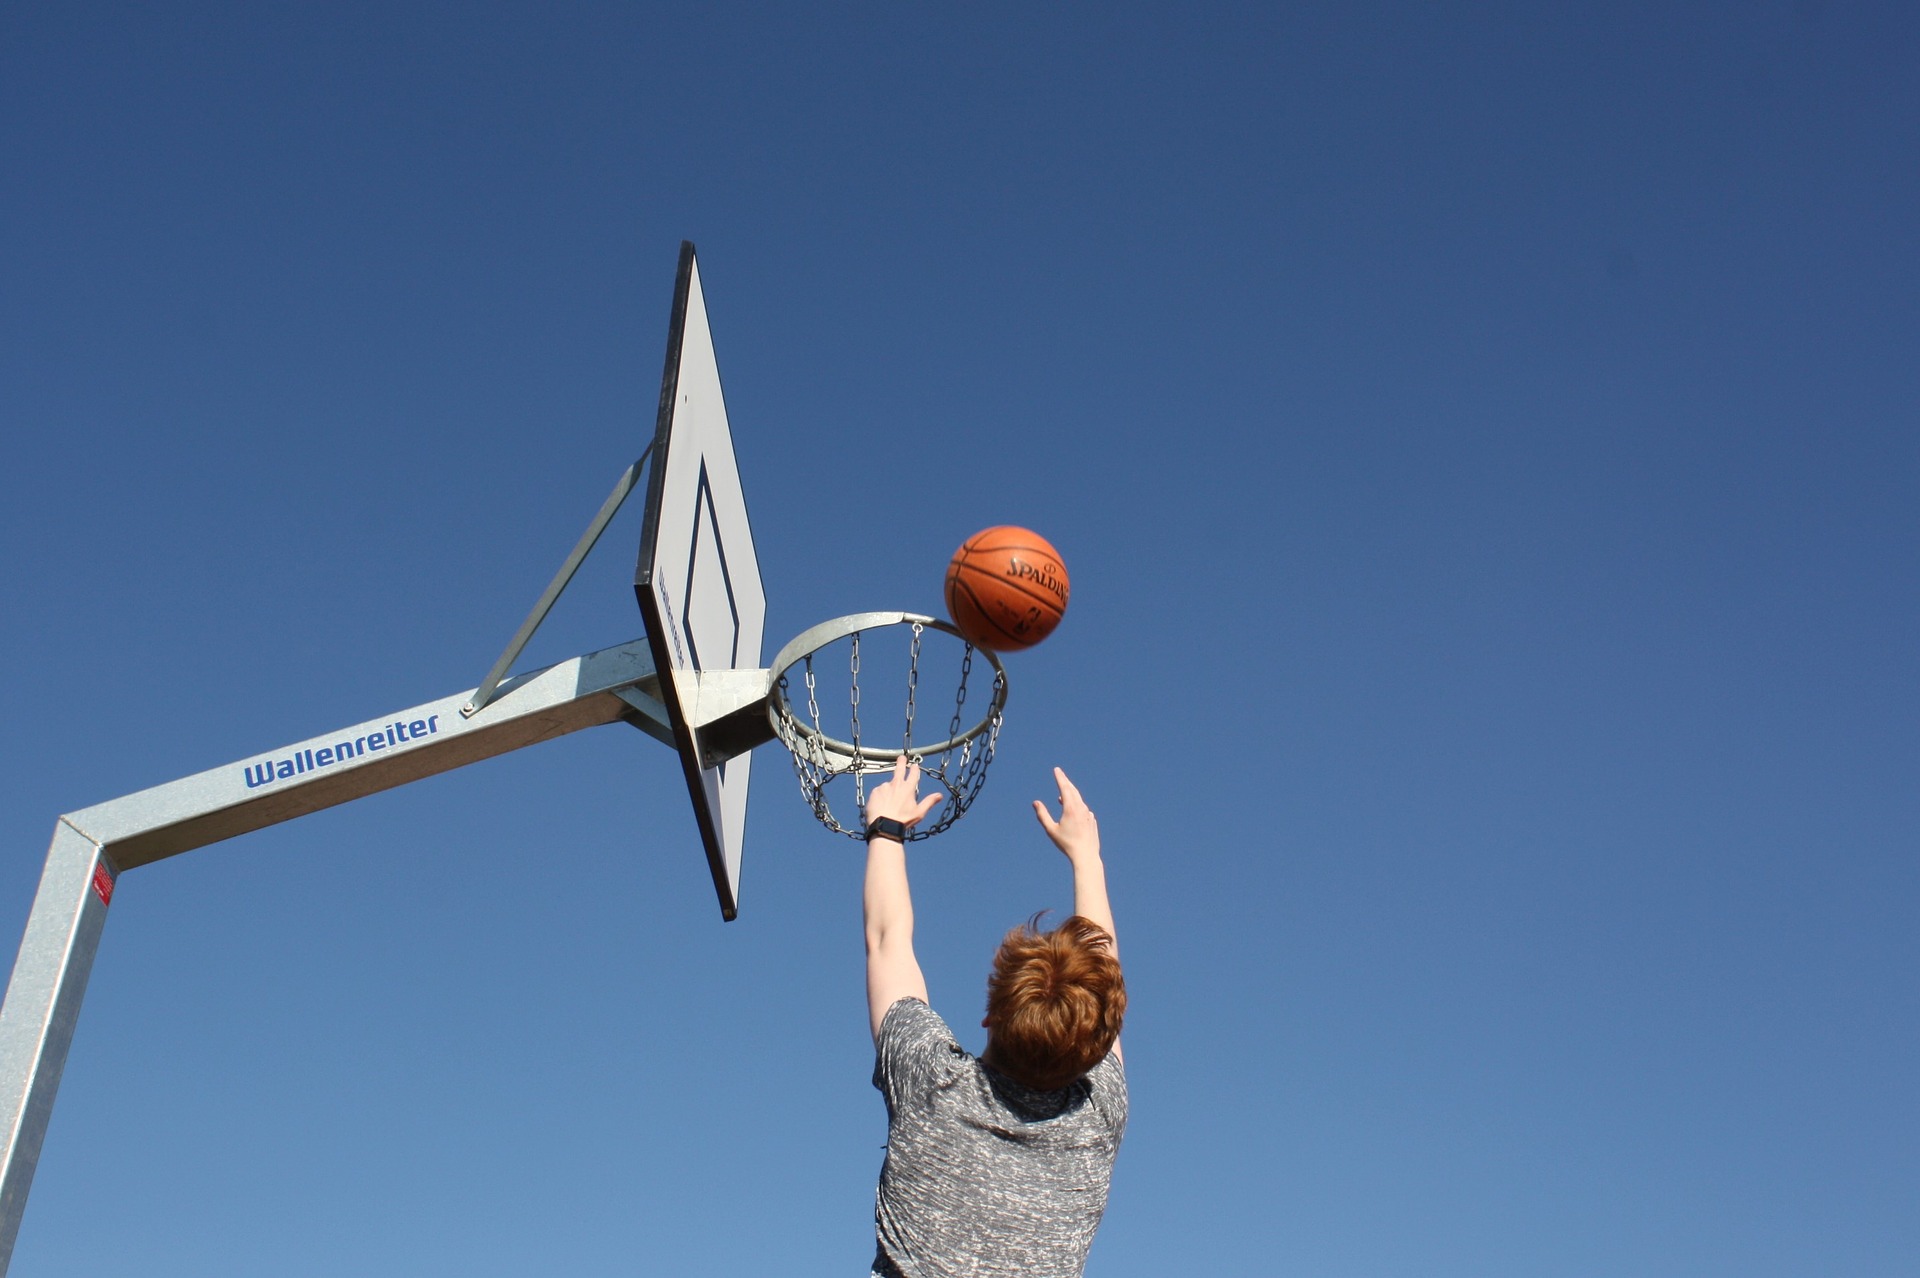 Турнир пройдет в формате уличного баскетбола в формате четыре на четыре. Фото: pixabay.com